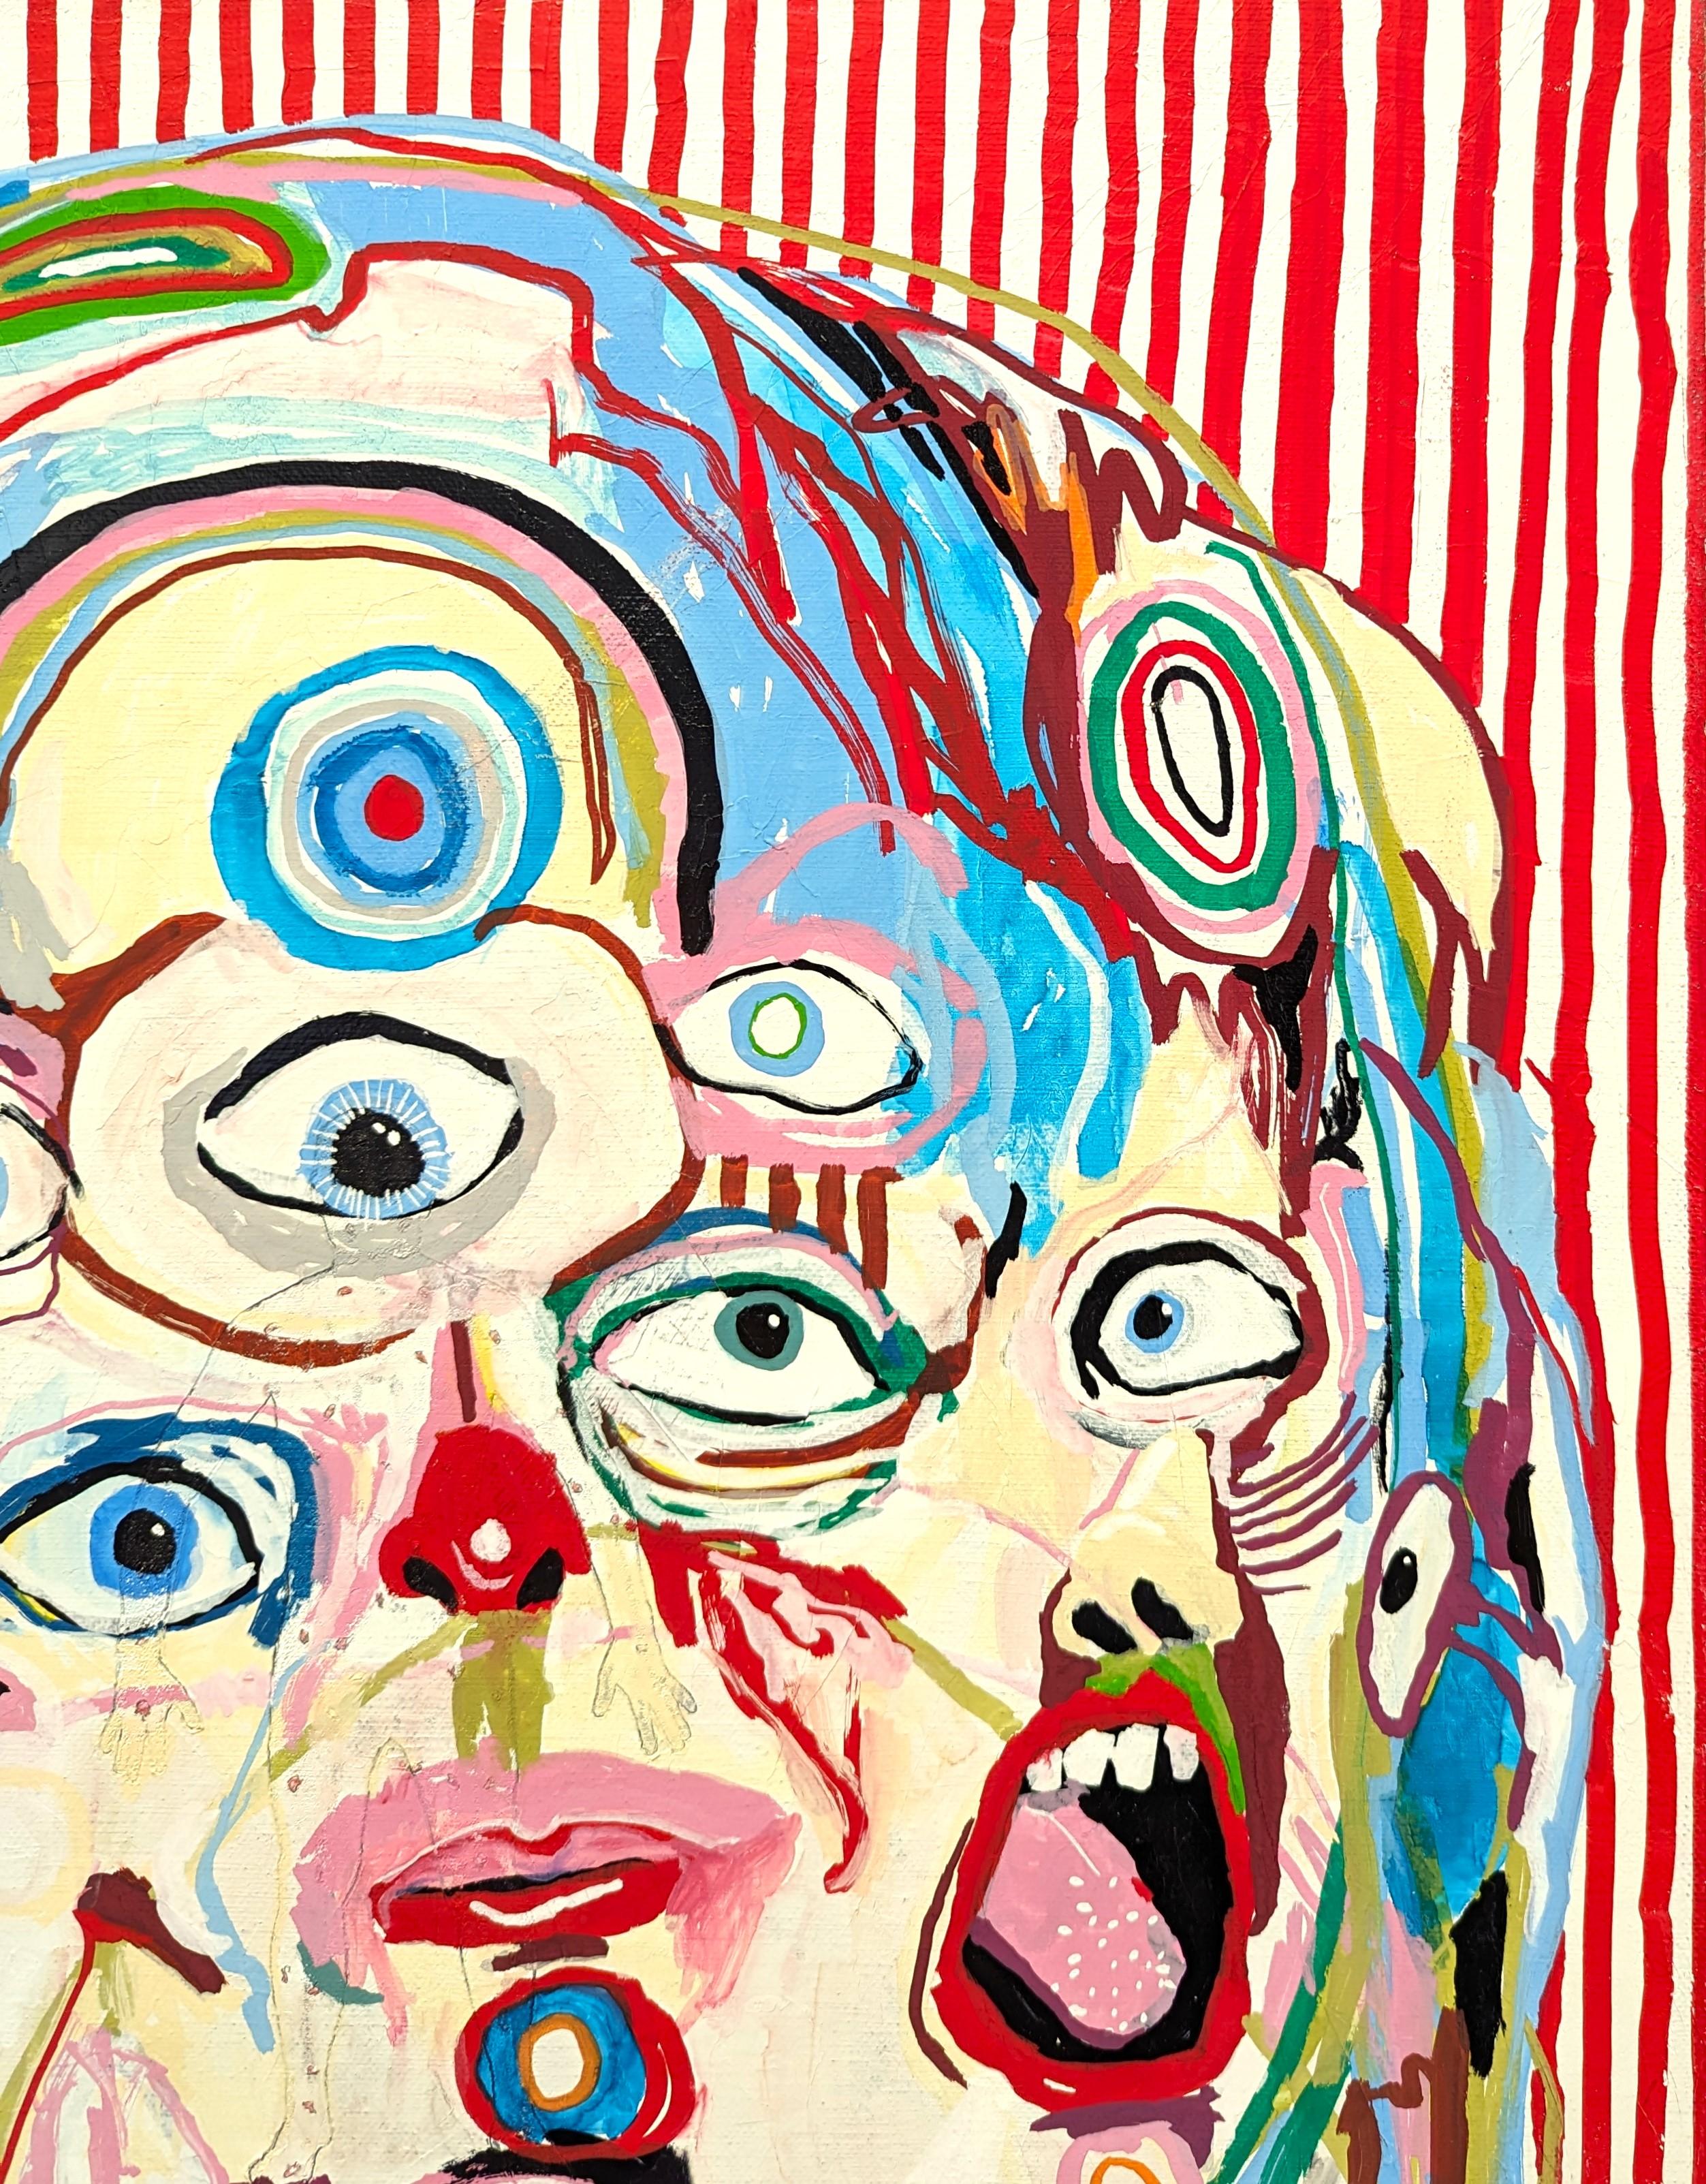 Farbenfrohe surrealistische Malerei des in Memphis lebenden zeitgenössischen Künstlers Alex Paulus. Das Werk zeigt eine zentrale, homunkulusähnliche Kreatur mit vielen Augen und Mündern vor einem rot-weiß gestreiften Hintergrund. Derzeit ungerahmt,